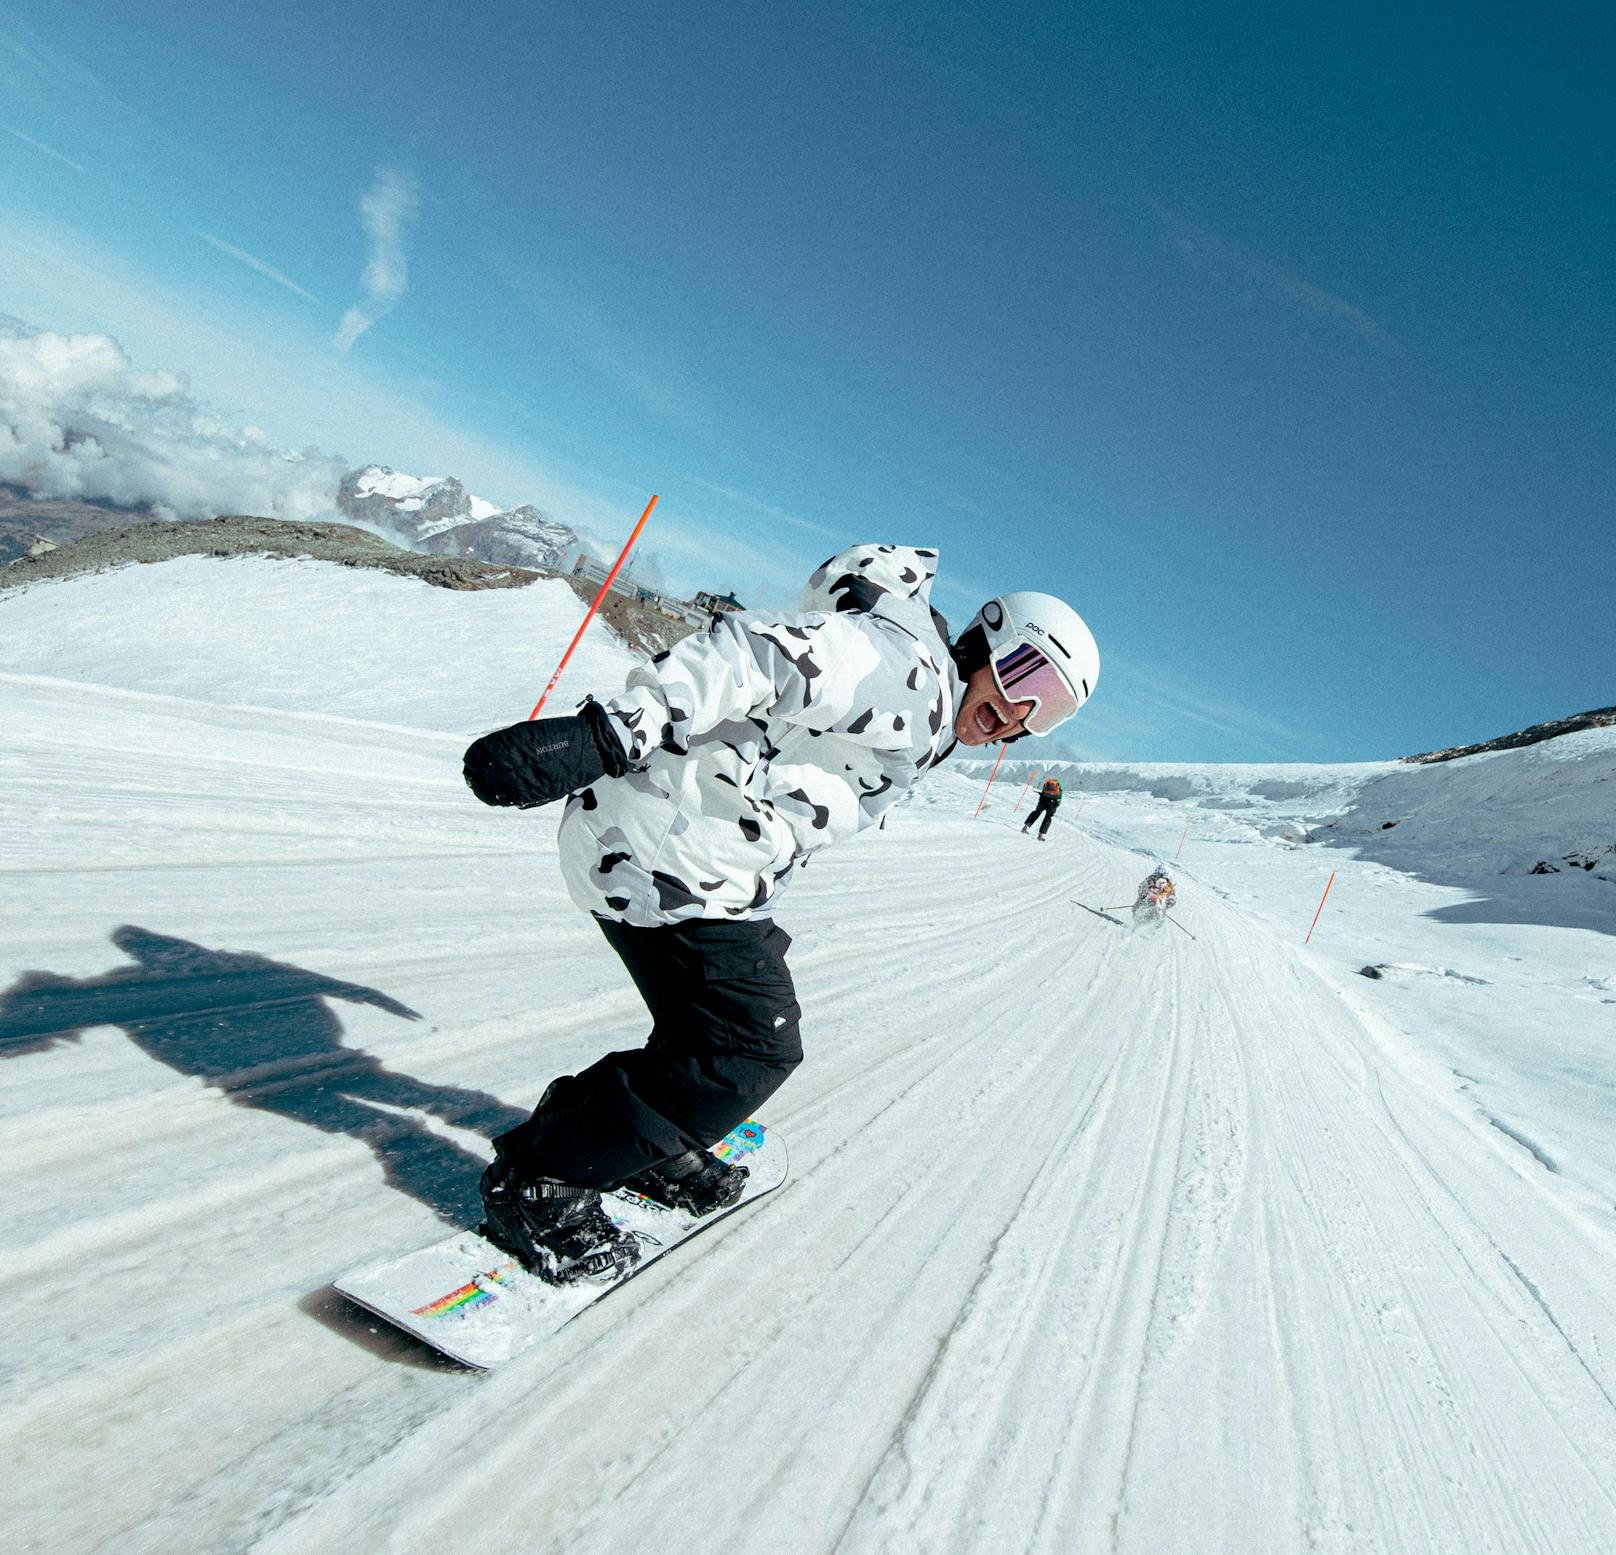 Pat Burgener, der Schweizer Snowboard-Legende, zeigt für die Wintersport Kampagne von Zalando, was er kann. Sein Outfit kannst du <a rel="nofollow" href="https://www.zalando.at/outfits/BuTYDuXITmu/"><strong>HIER</strong></a> nachkaufen.